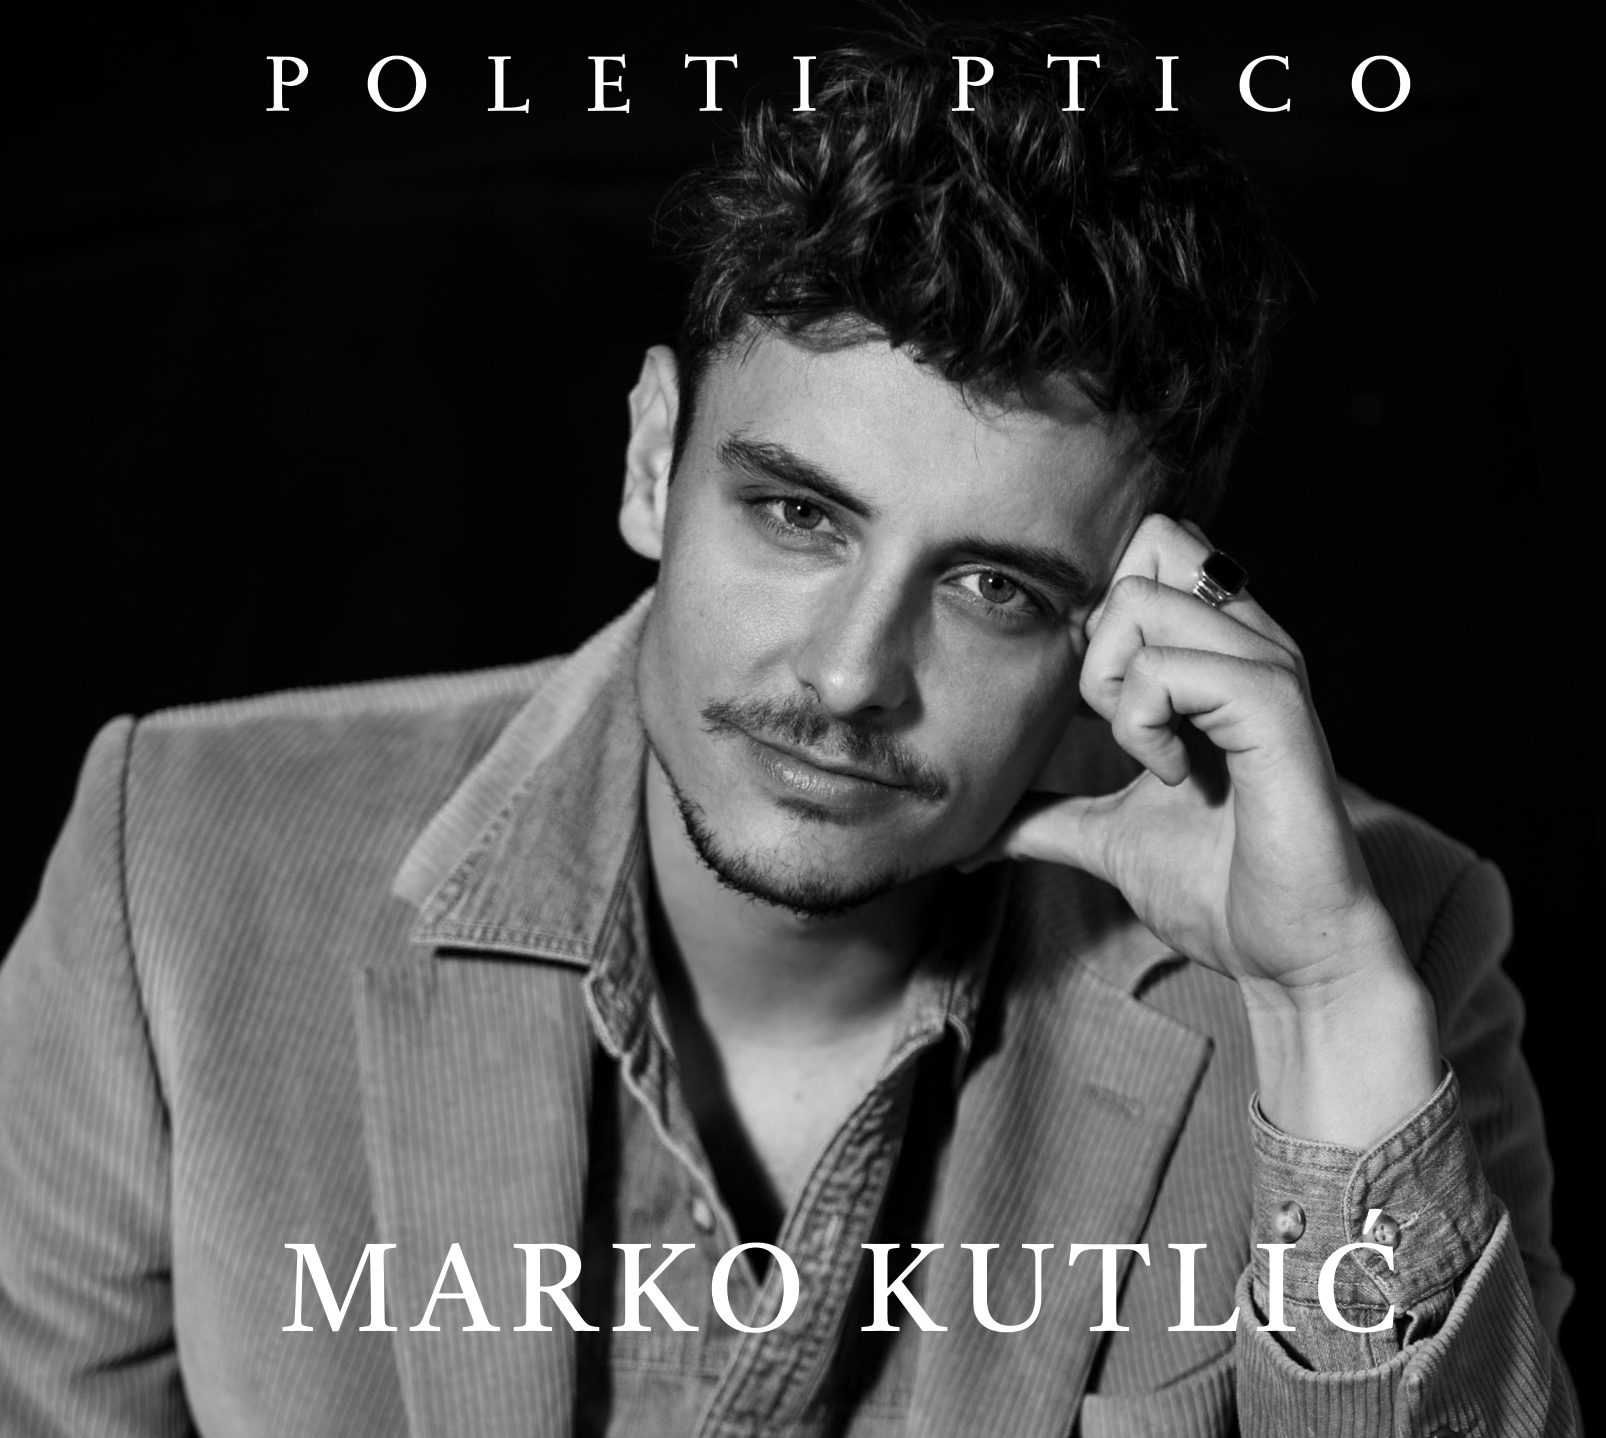 Novi album Marka Kutlića “Poleti ptico” od danas u prodaji